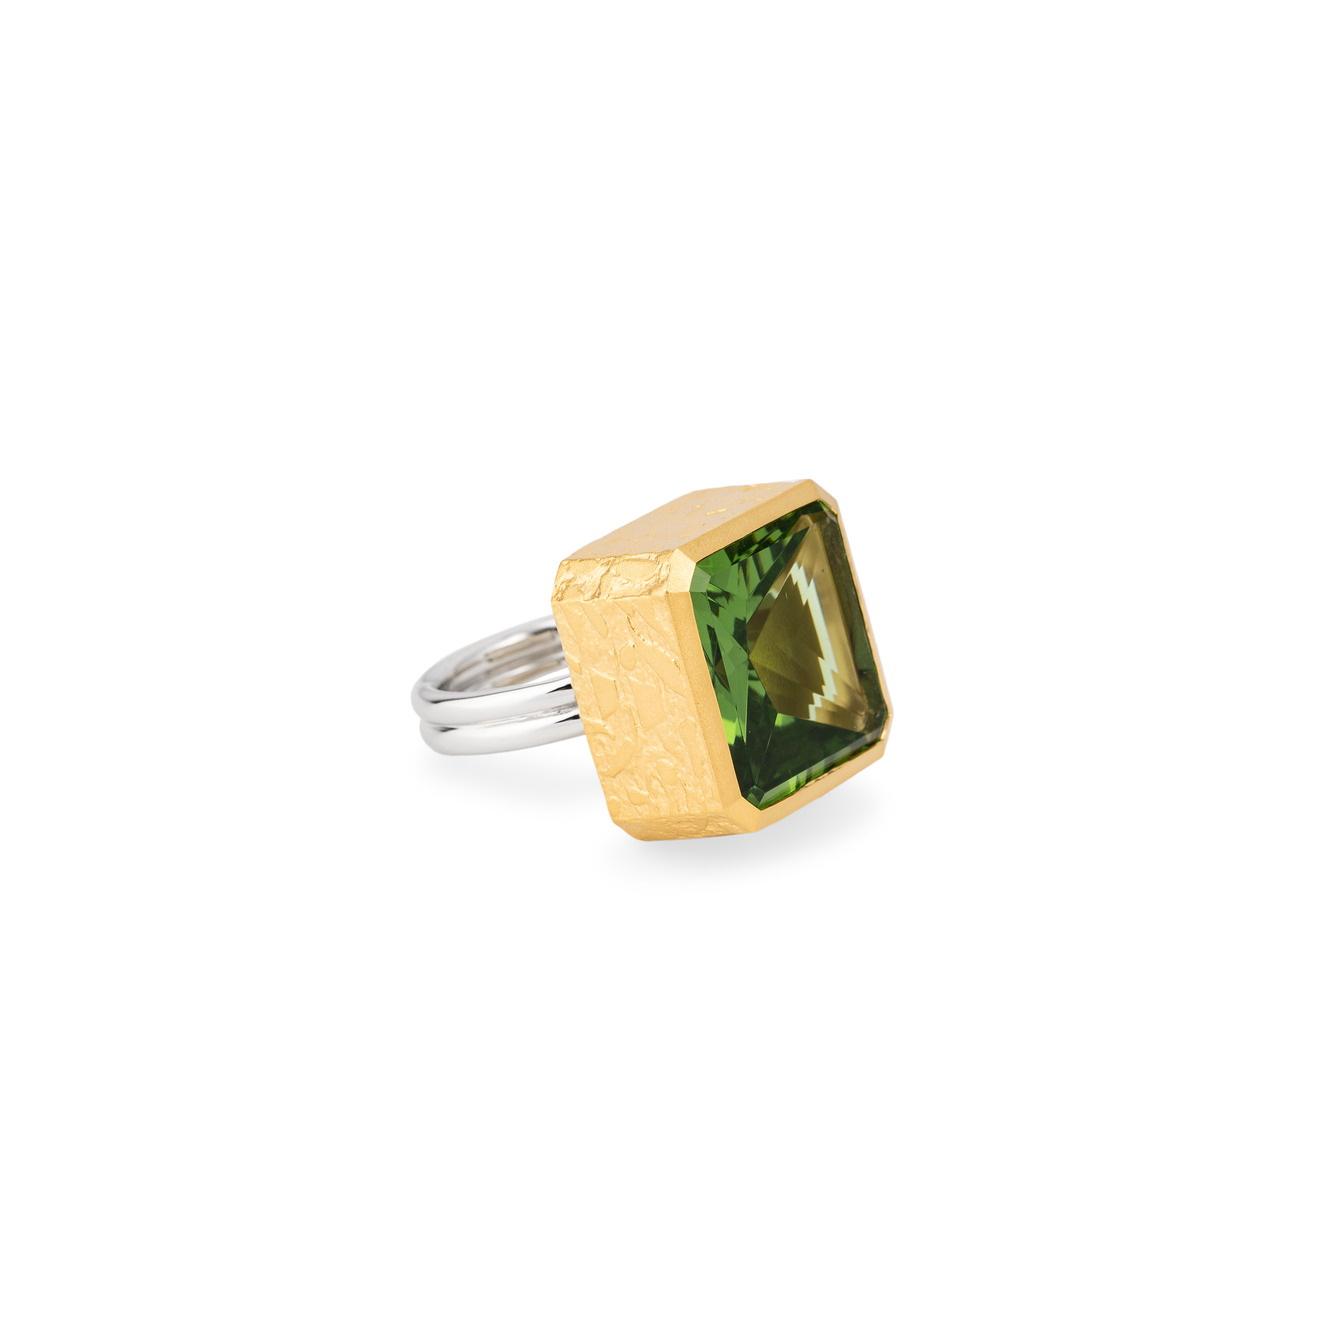 tilda двойное биколорное кольцо нимб из серебра с позолотой SKYE Биколорное кольцо из серебра с крупным зеленым кристаллом